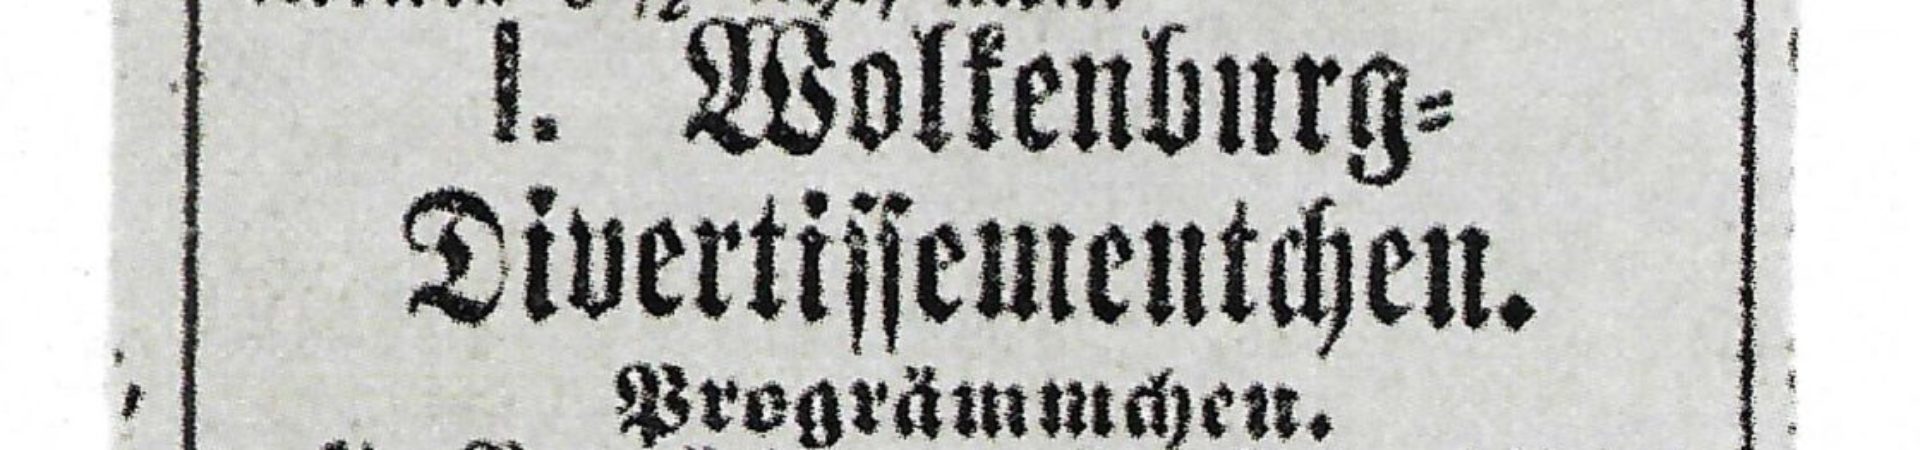 1. Wolkenburg Divertissementchen - Divertissementchen 1874 - Zeitungsausriss mit Einladung zum ersten Divertissementchen